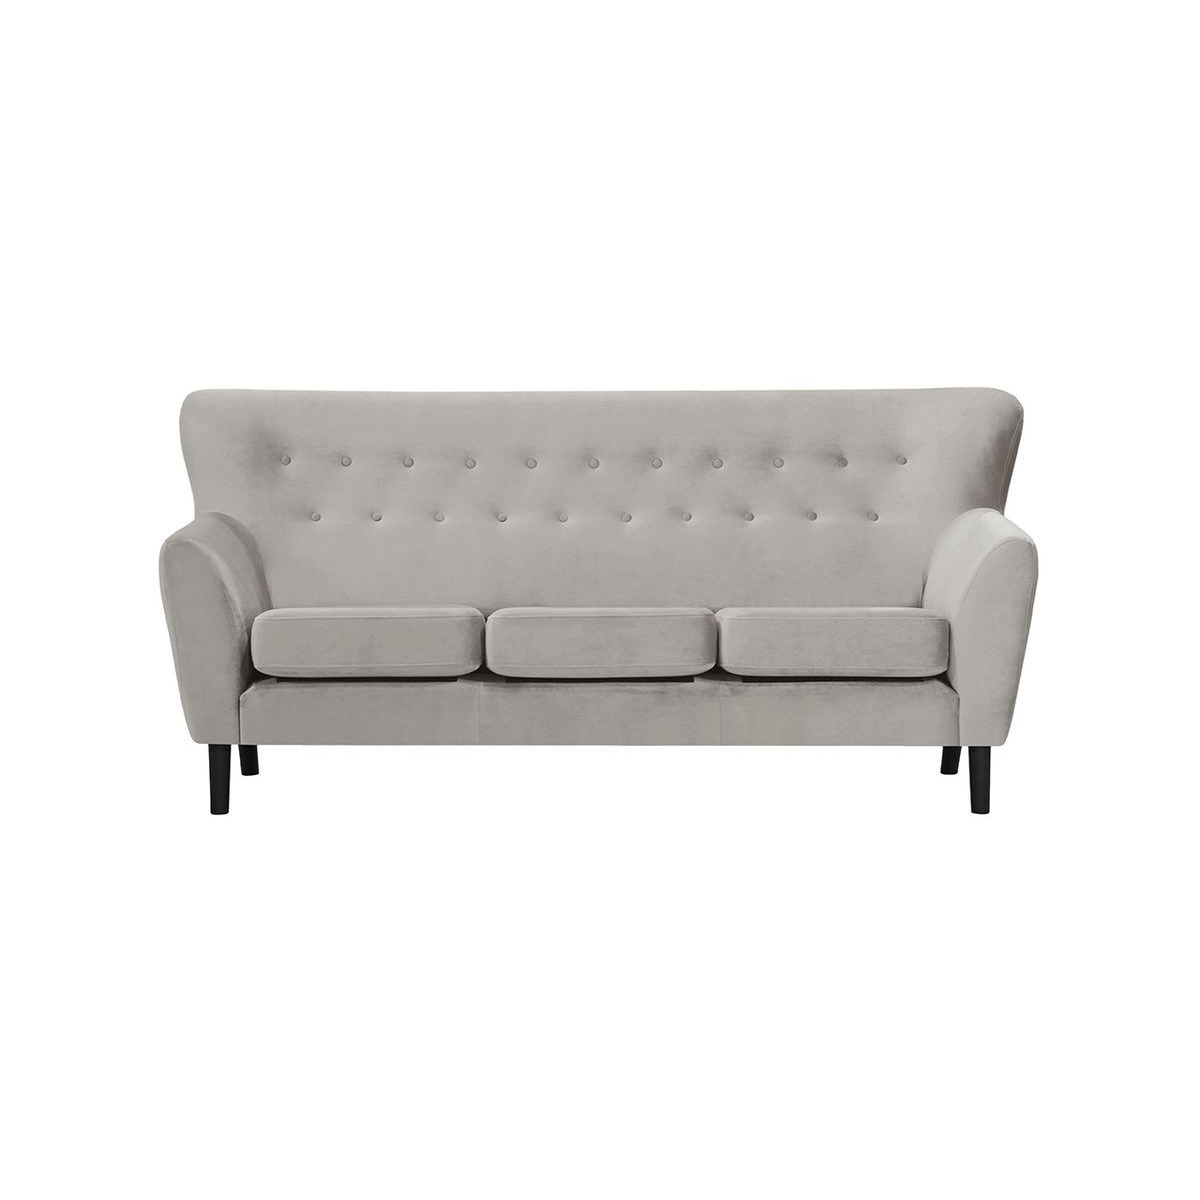 Zamba 3 Seater Sofa, silver - image 1